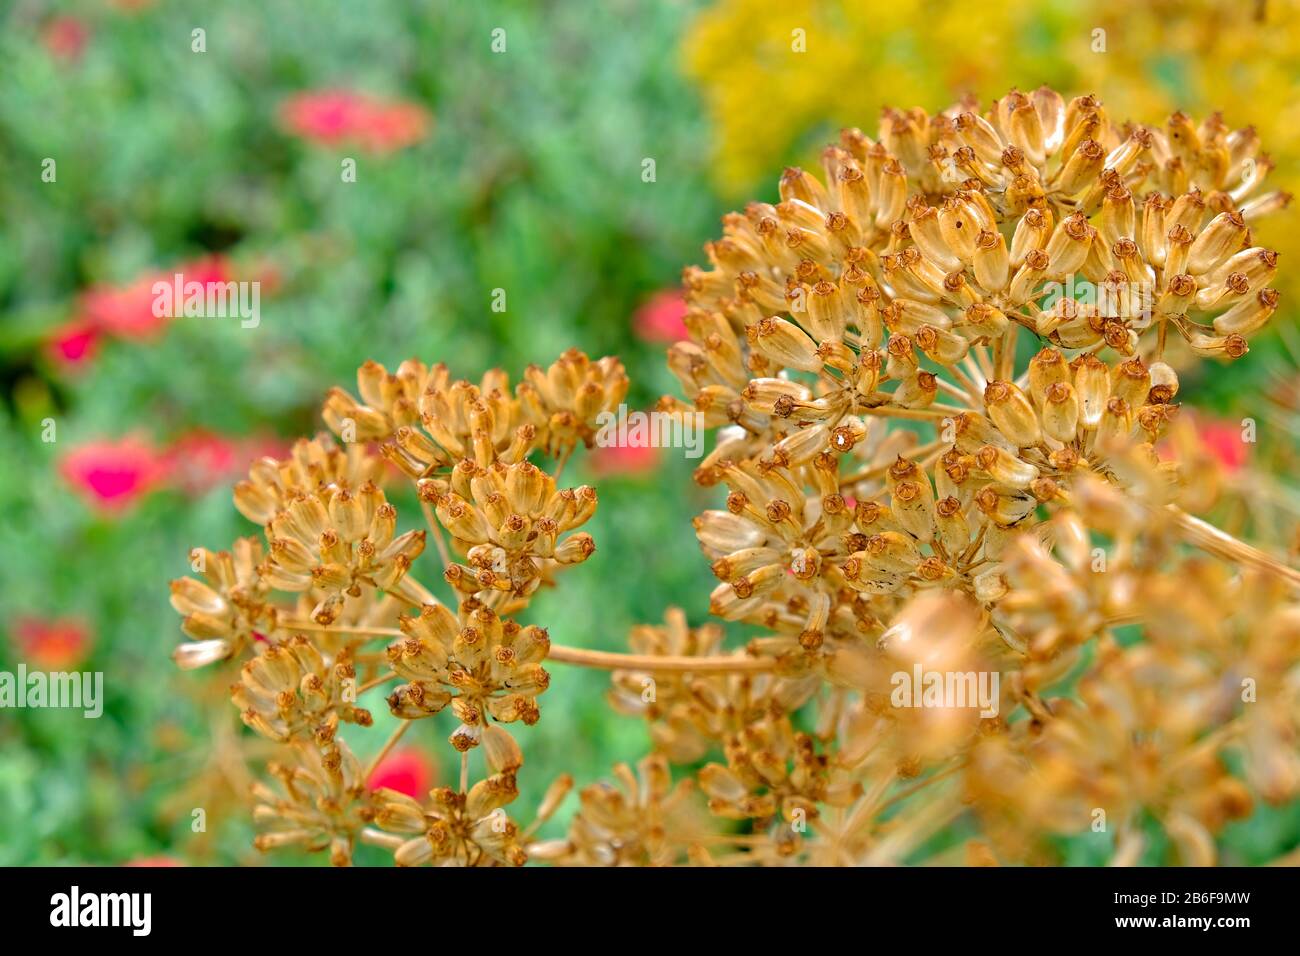 Eine trockene Dolde einer Apiaceae aromatisch blühende Pflanze, lebhaft blühende Gartenpflanzen im Hintergrund. Stockfoto